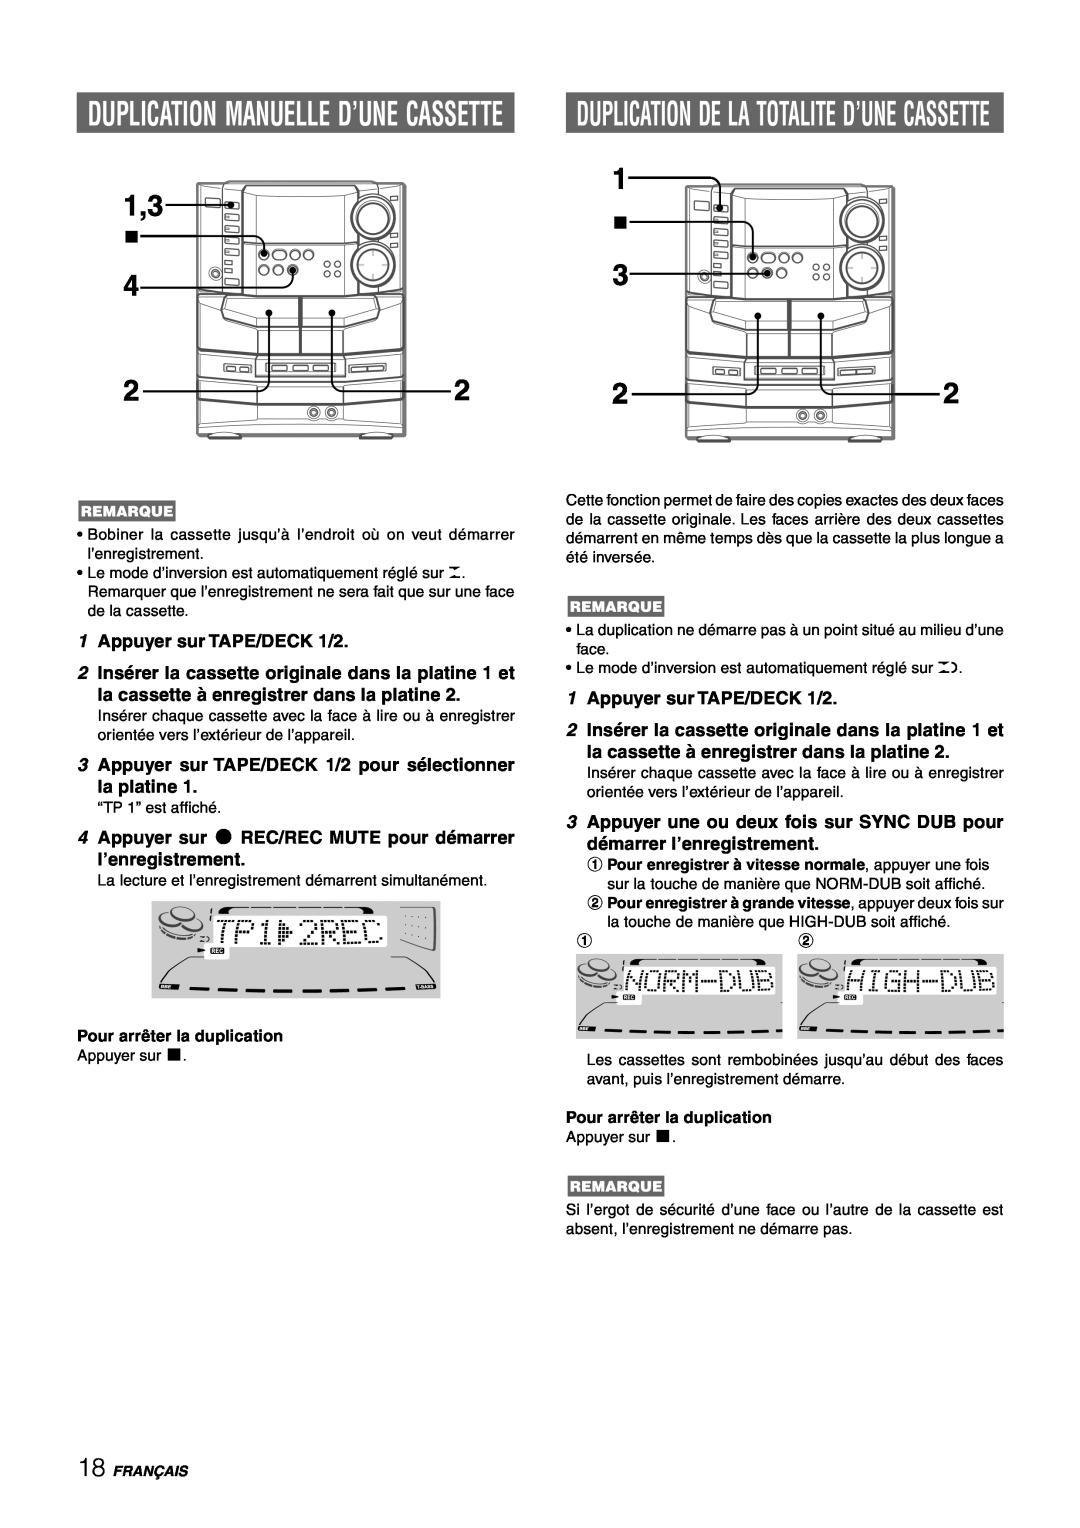 Sony NSX-AJ80 Duplication Manuelle D’Une Cassette, 1Appuyer sur TAPE/DECK 1/2, la cassette à enregistrer dans la platine 